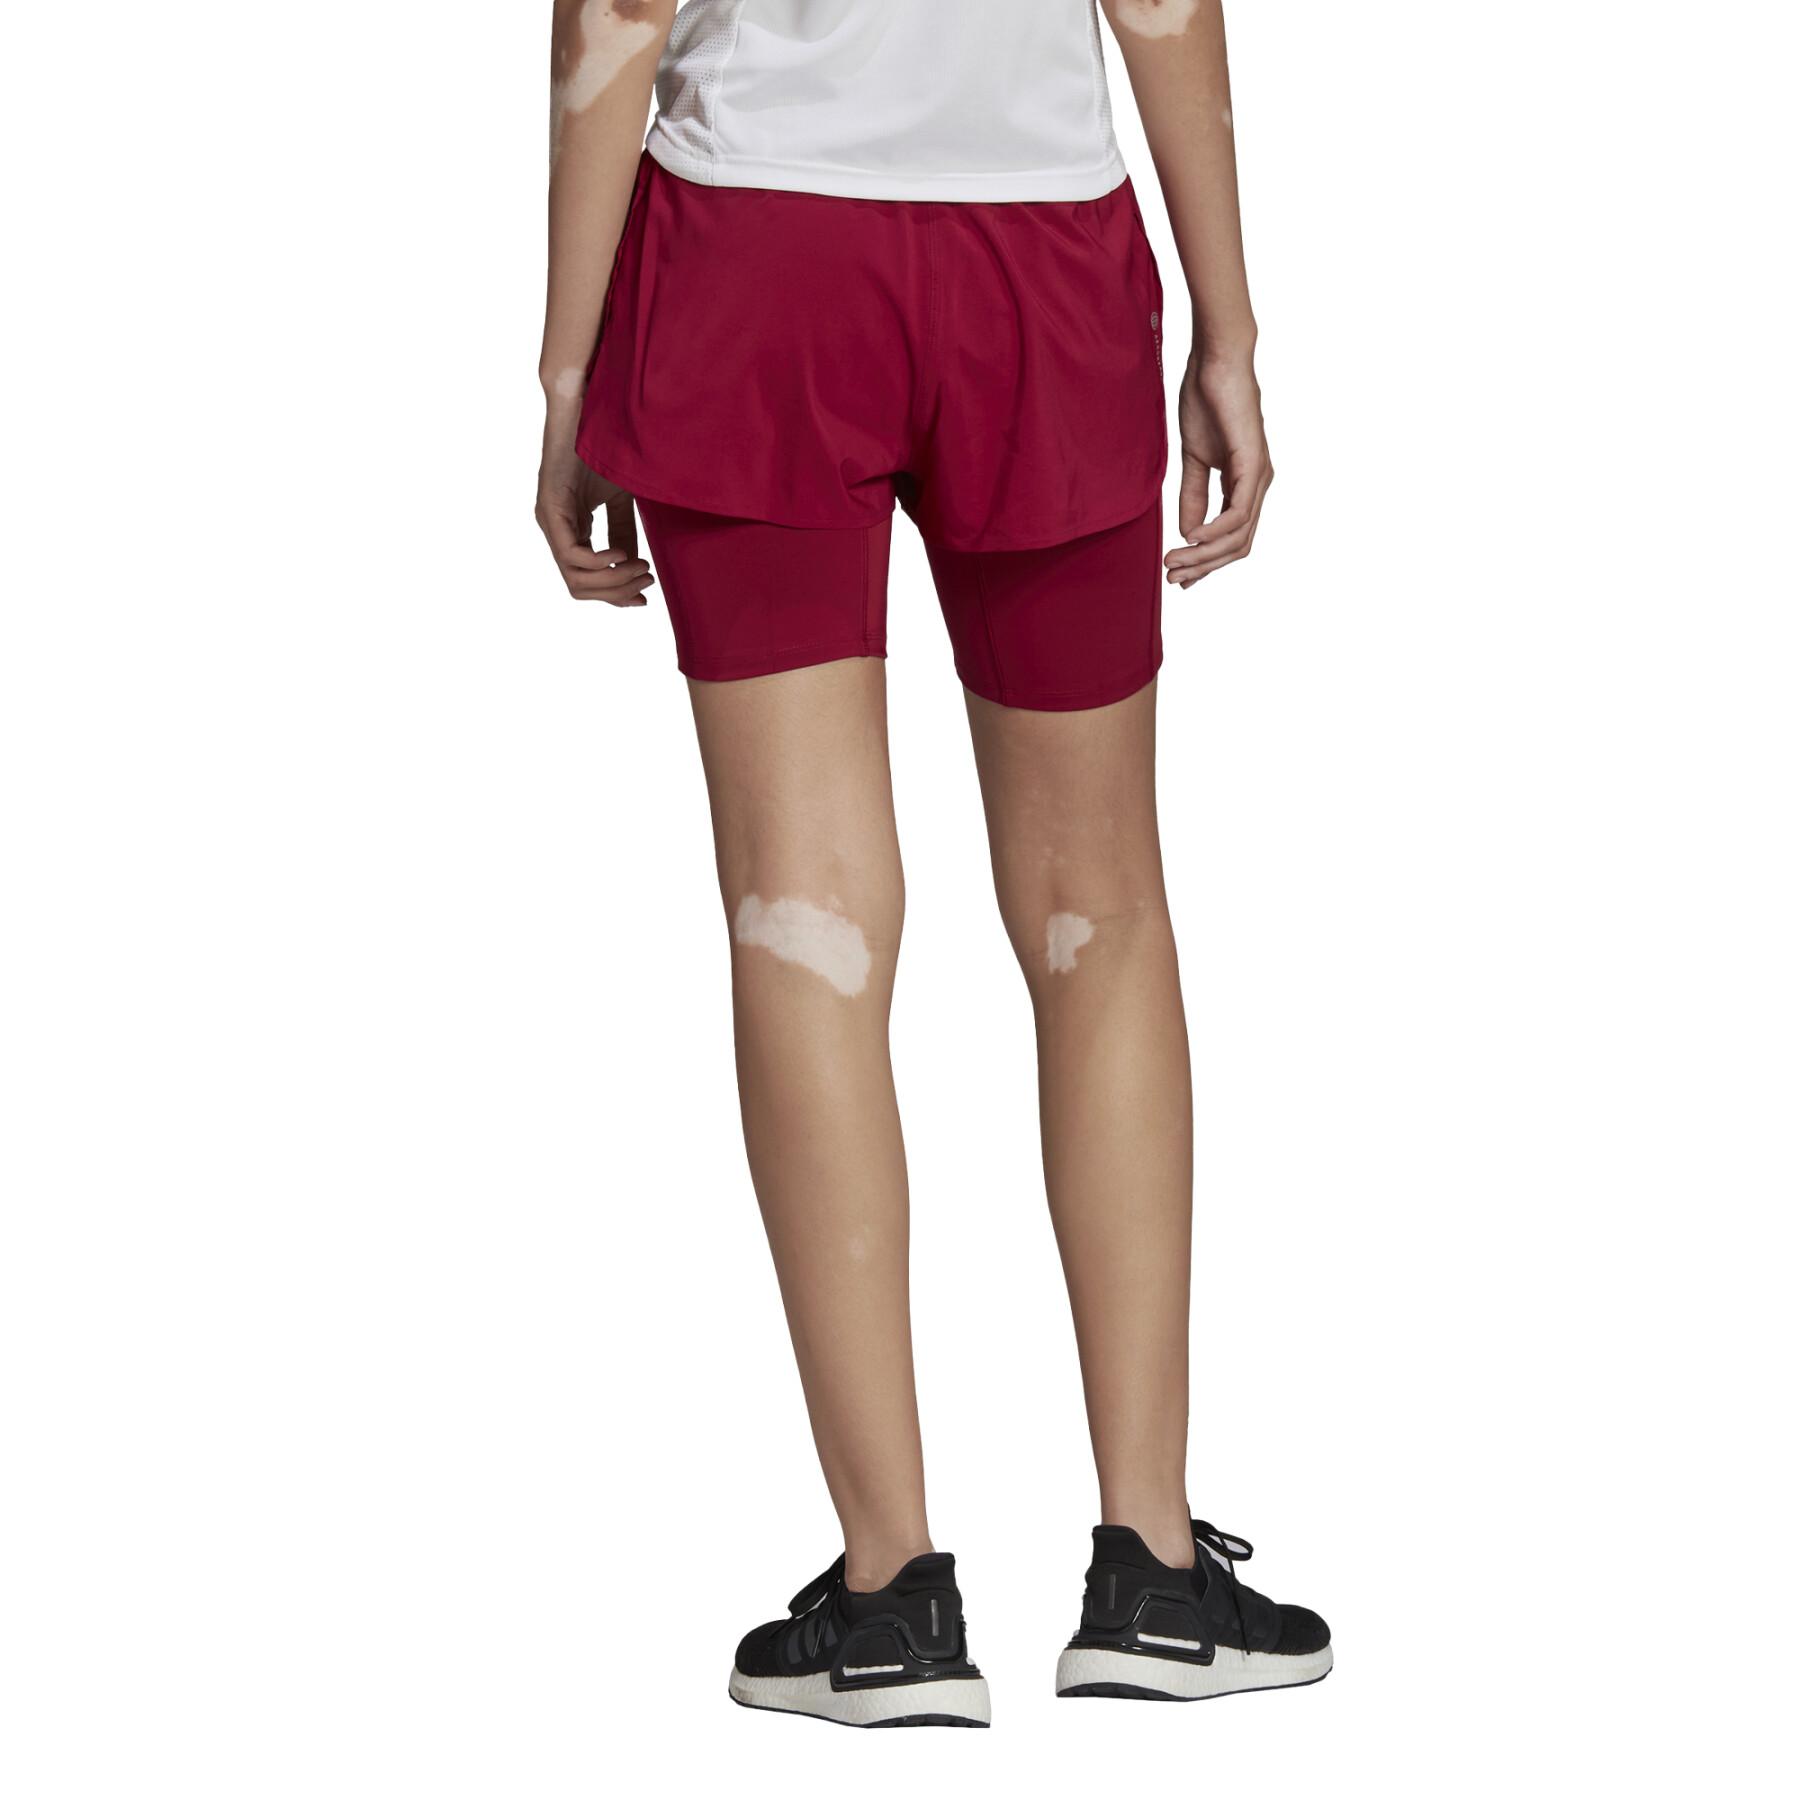 Women's shorts adidas Run Icons 3bar 2in1 Running